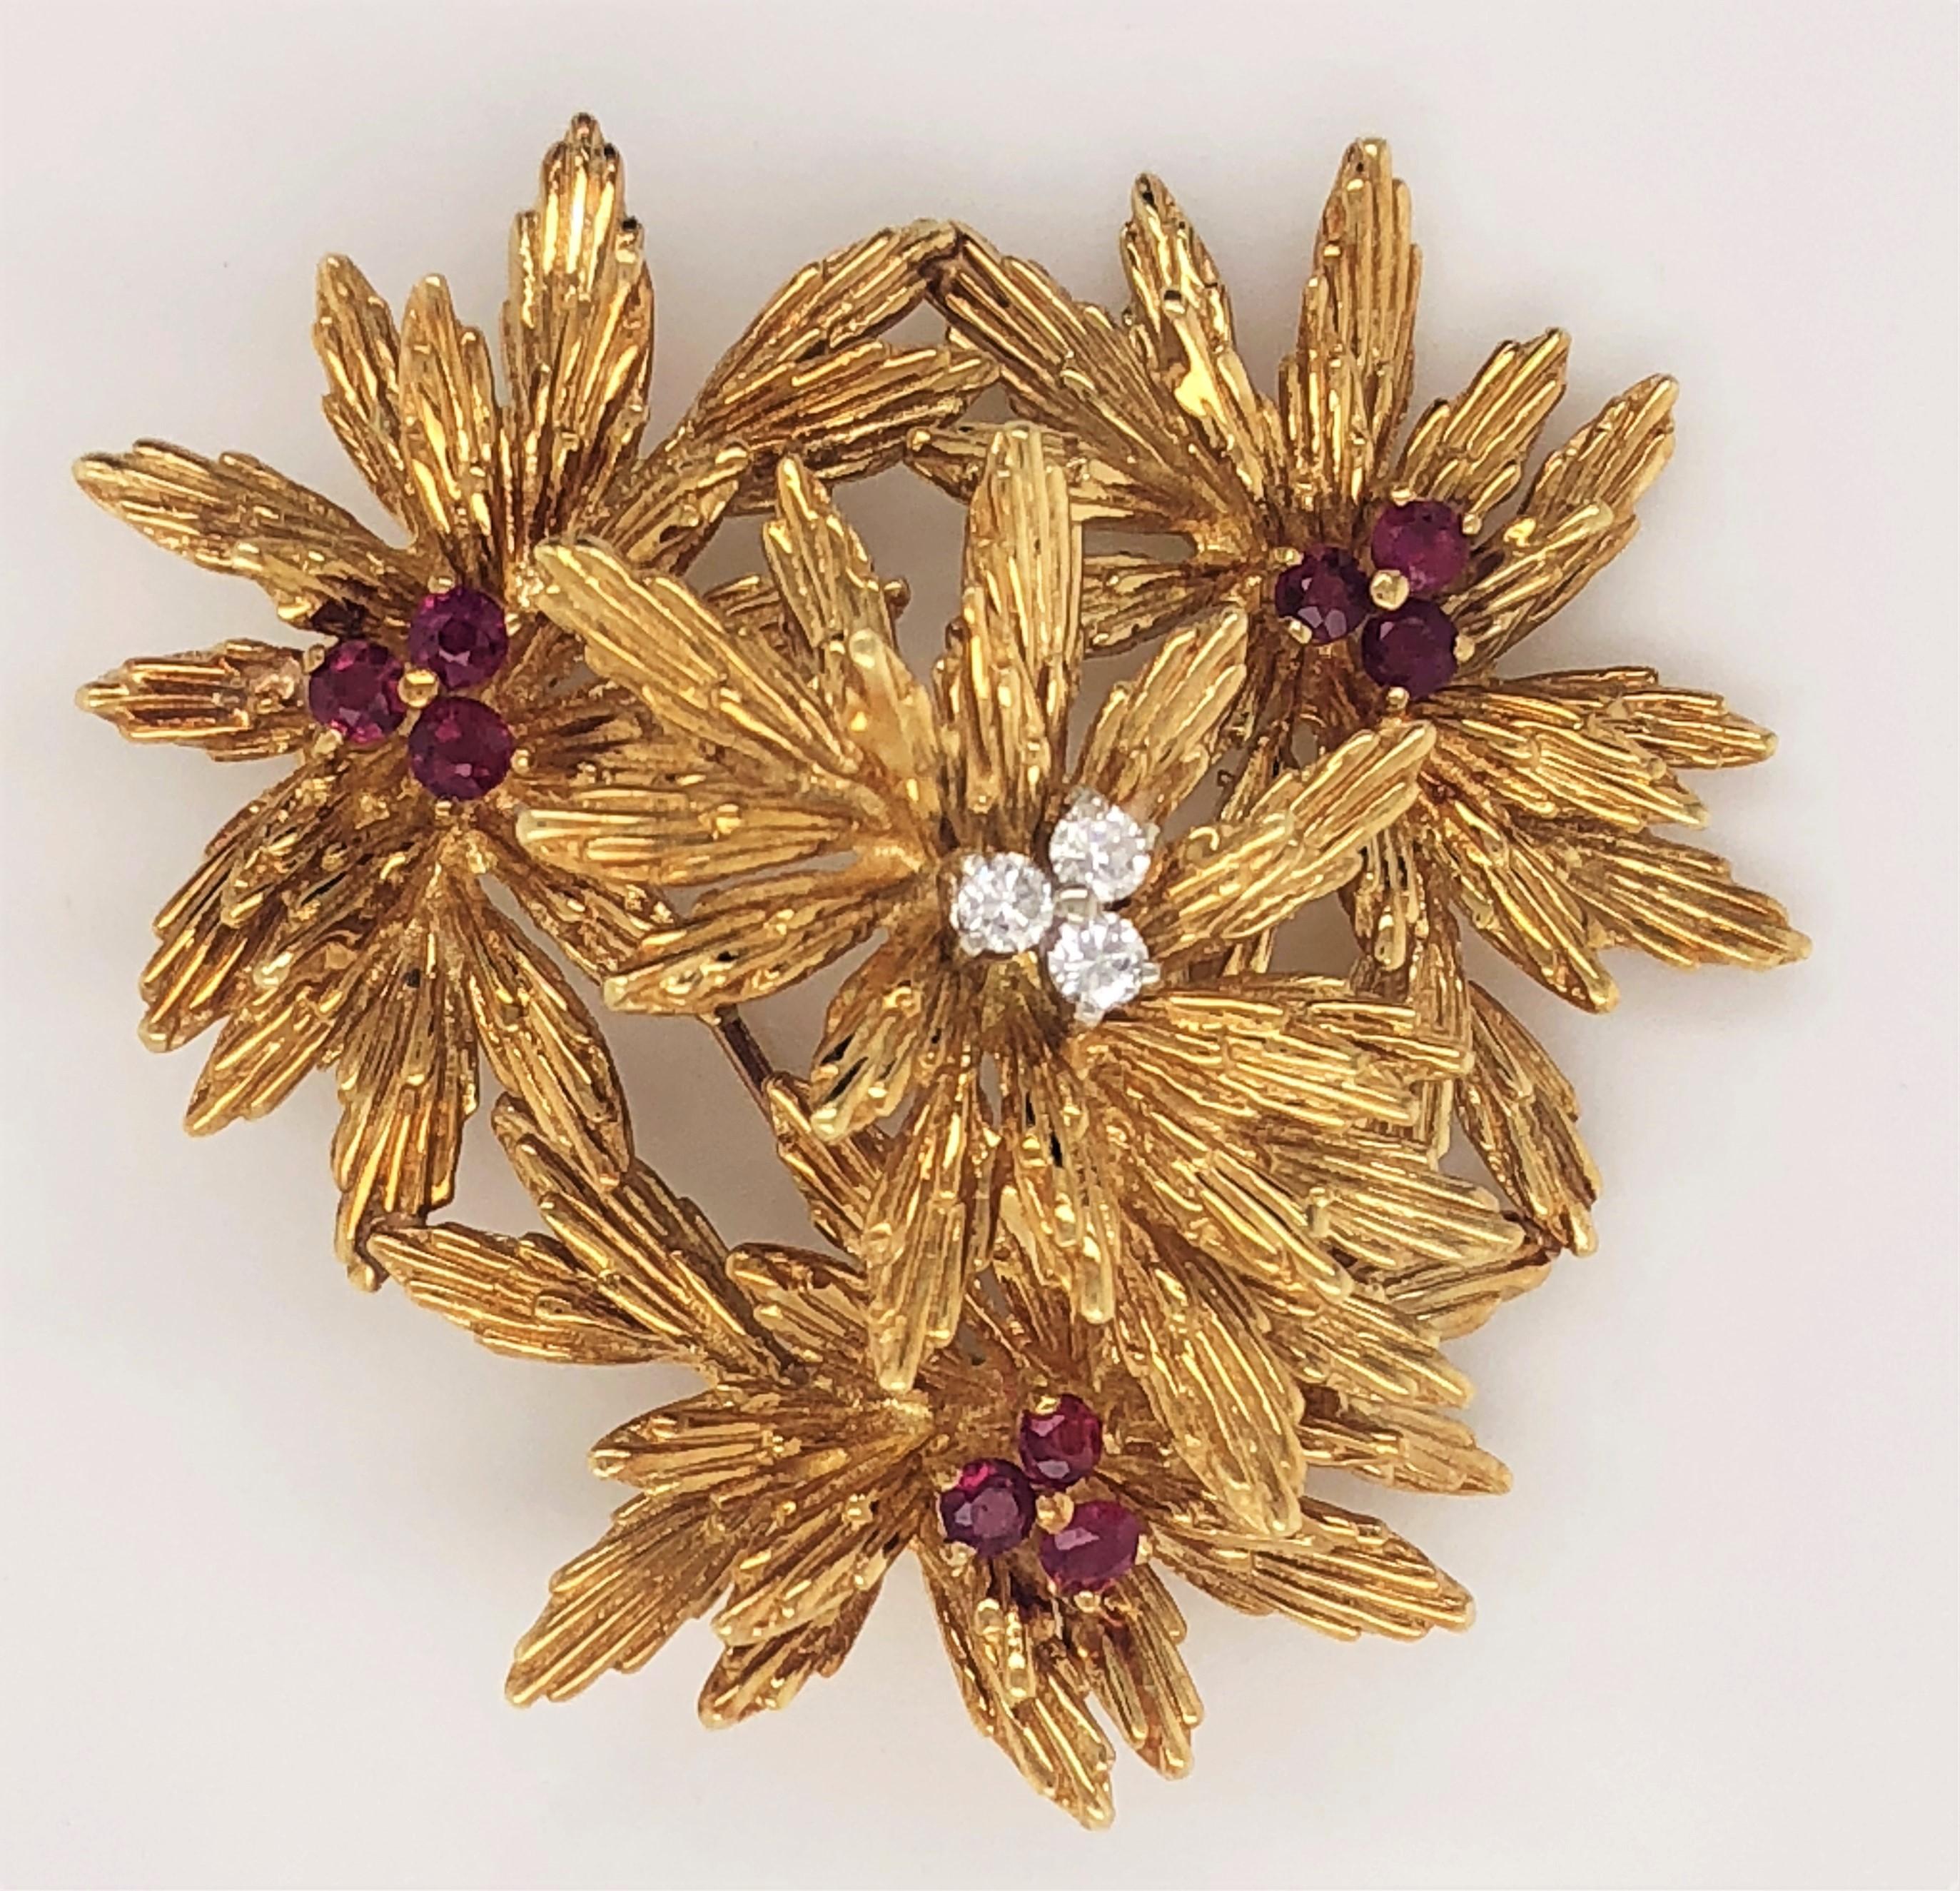 Un bouquet floral inspiré du chrysanthème en or jaune 22k riche de vingt-deux carats crée cette joyeuse broche de la collection des années 1960 de Tiffany & Co. Chaque éclat est soigneusement ciselé à la main avec des détails de texture sur les